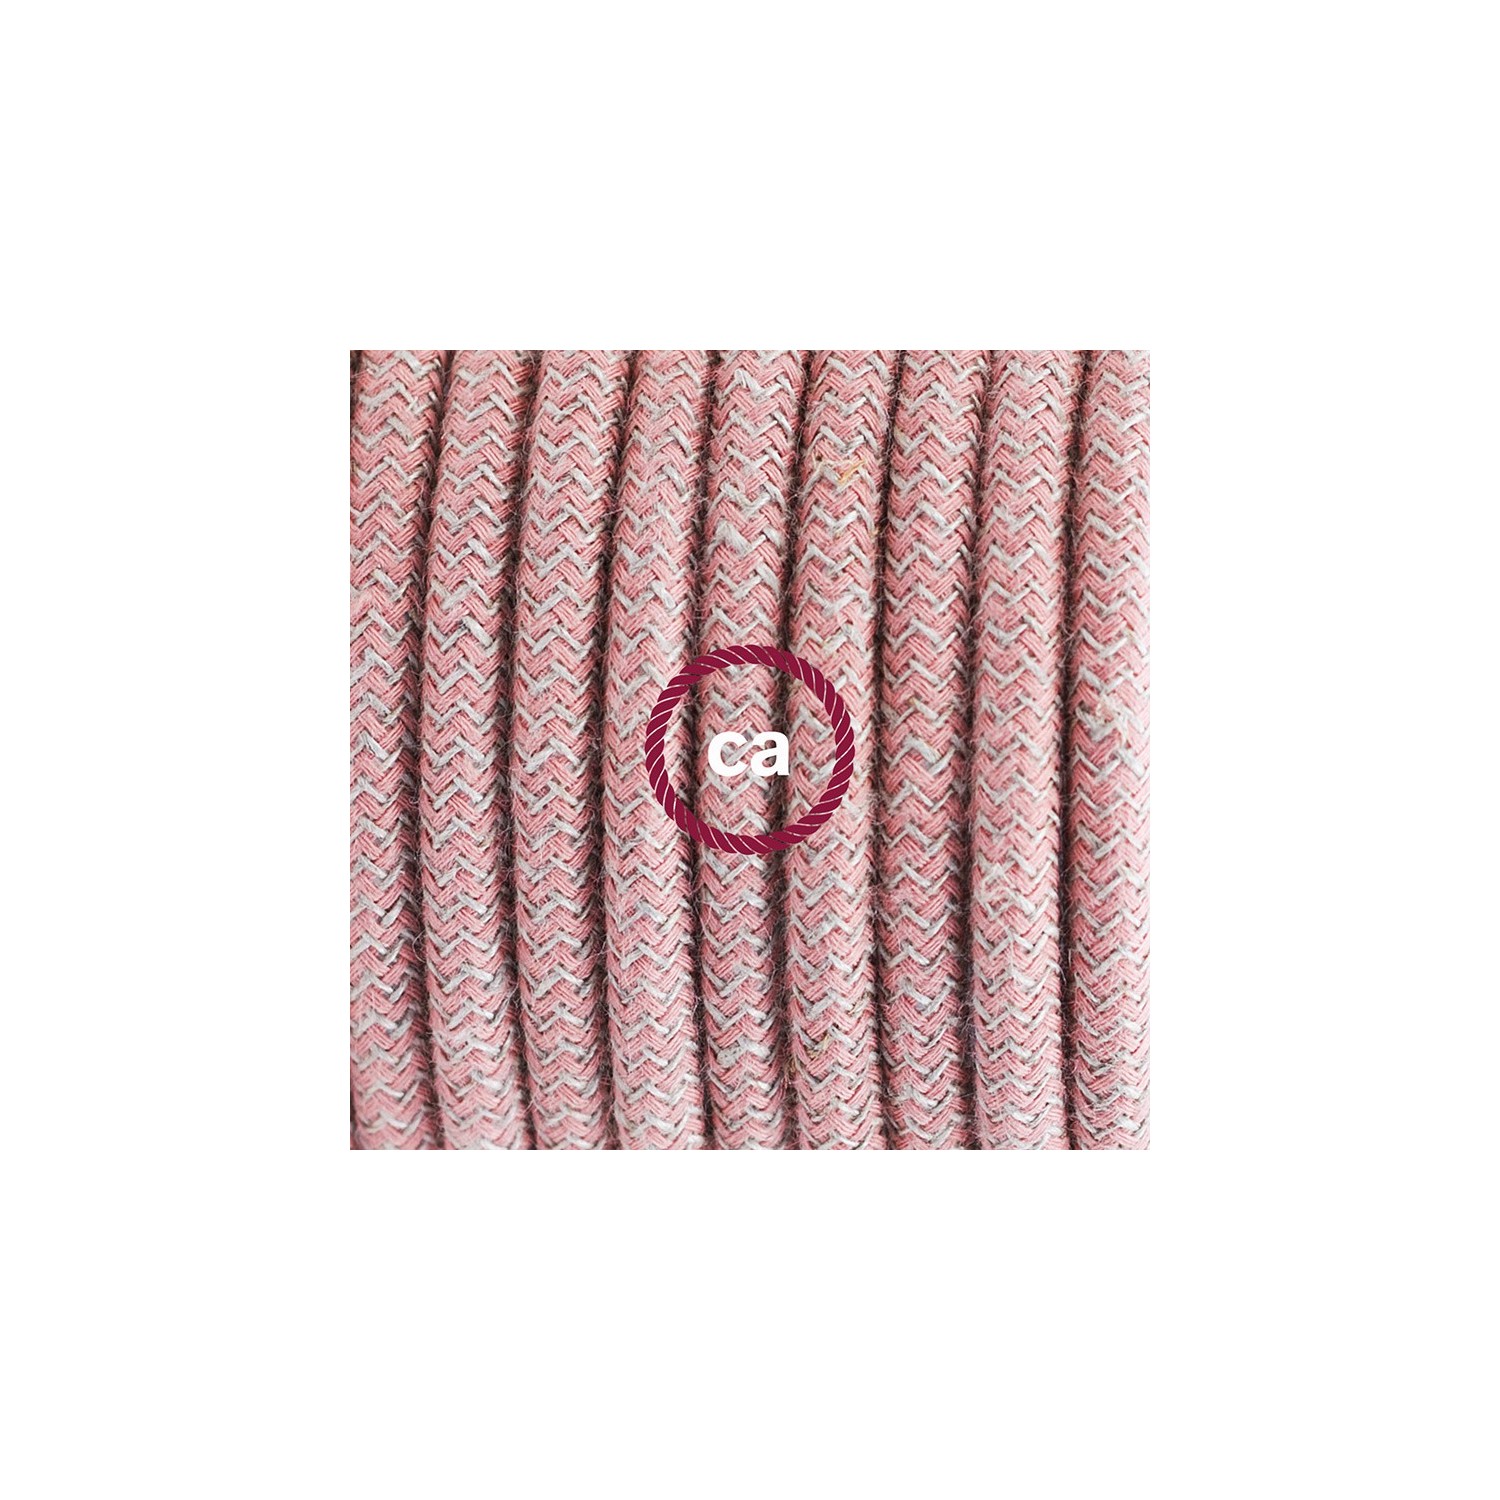 Komplet s talnim stikalom, RD71 zigzag, rožnati naravni lan in bombaž 3 m. Izberite barvo vtikača in stikala.